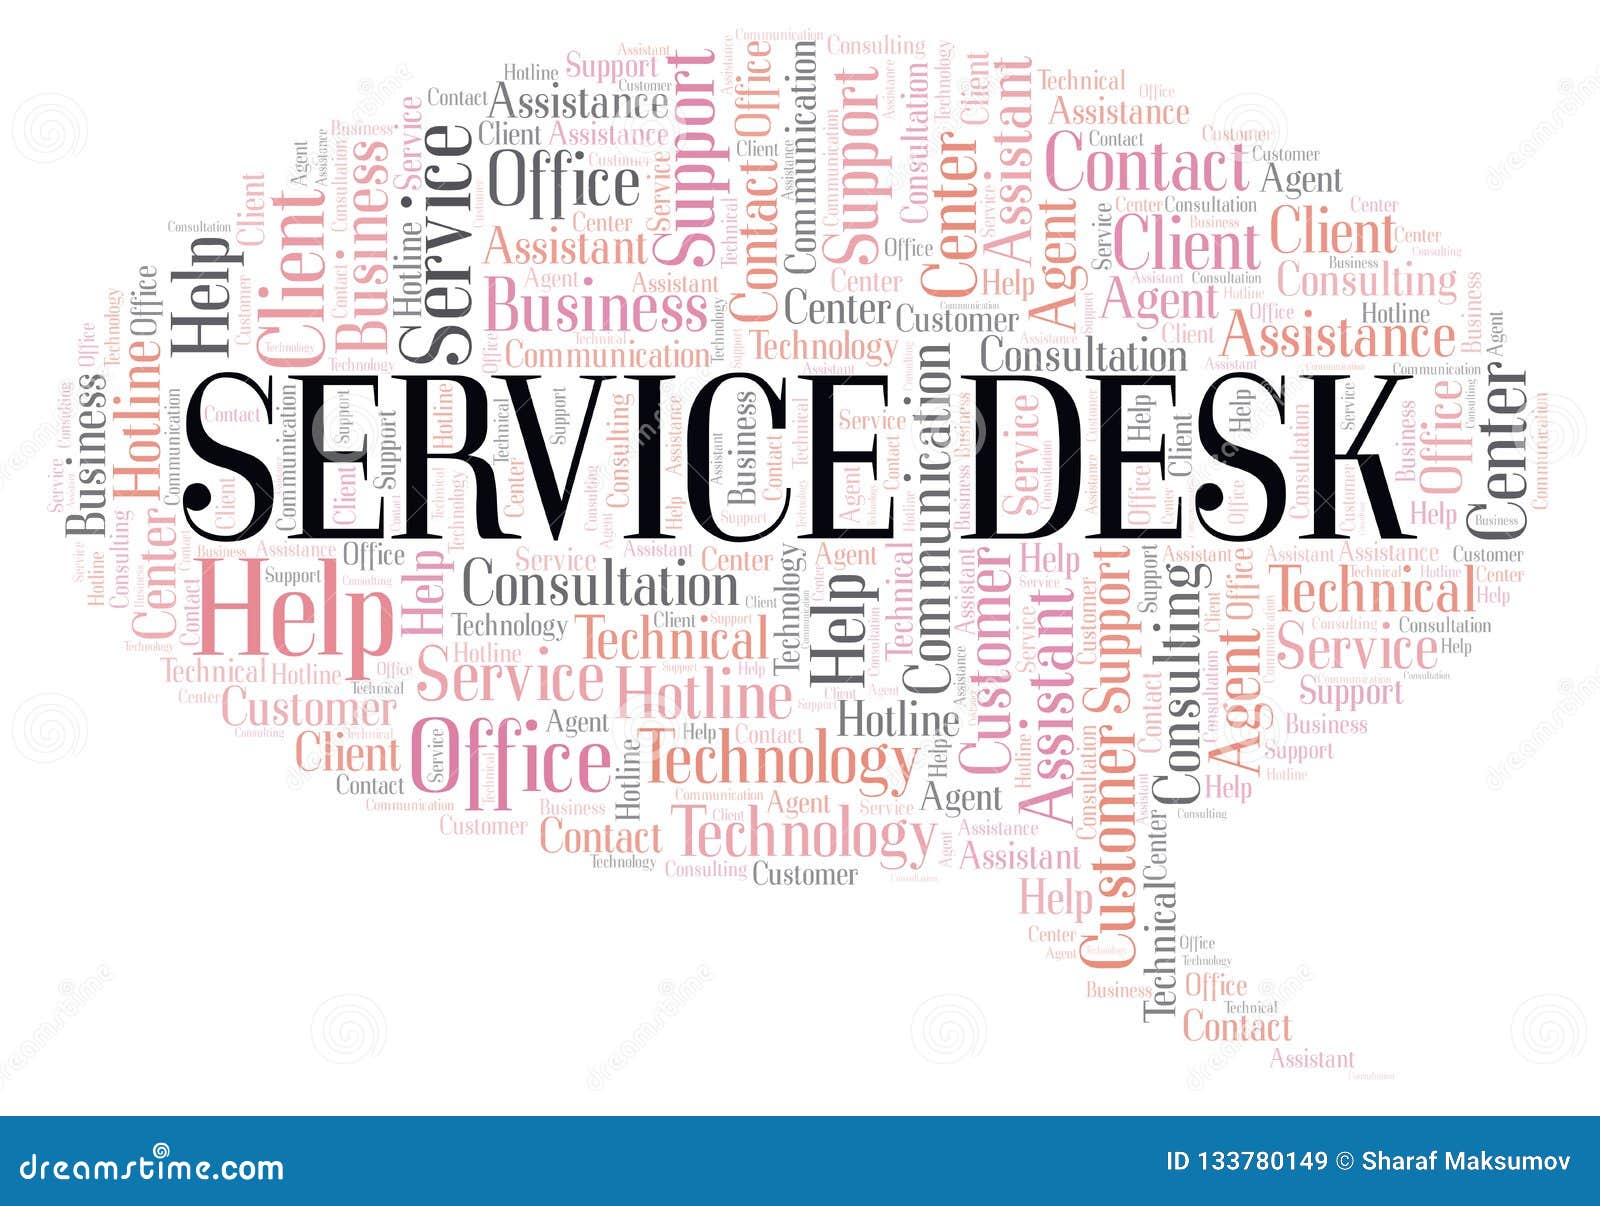 Service Desk Word Cloud Stock Illustration Illustration Of Font